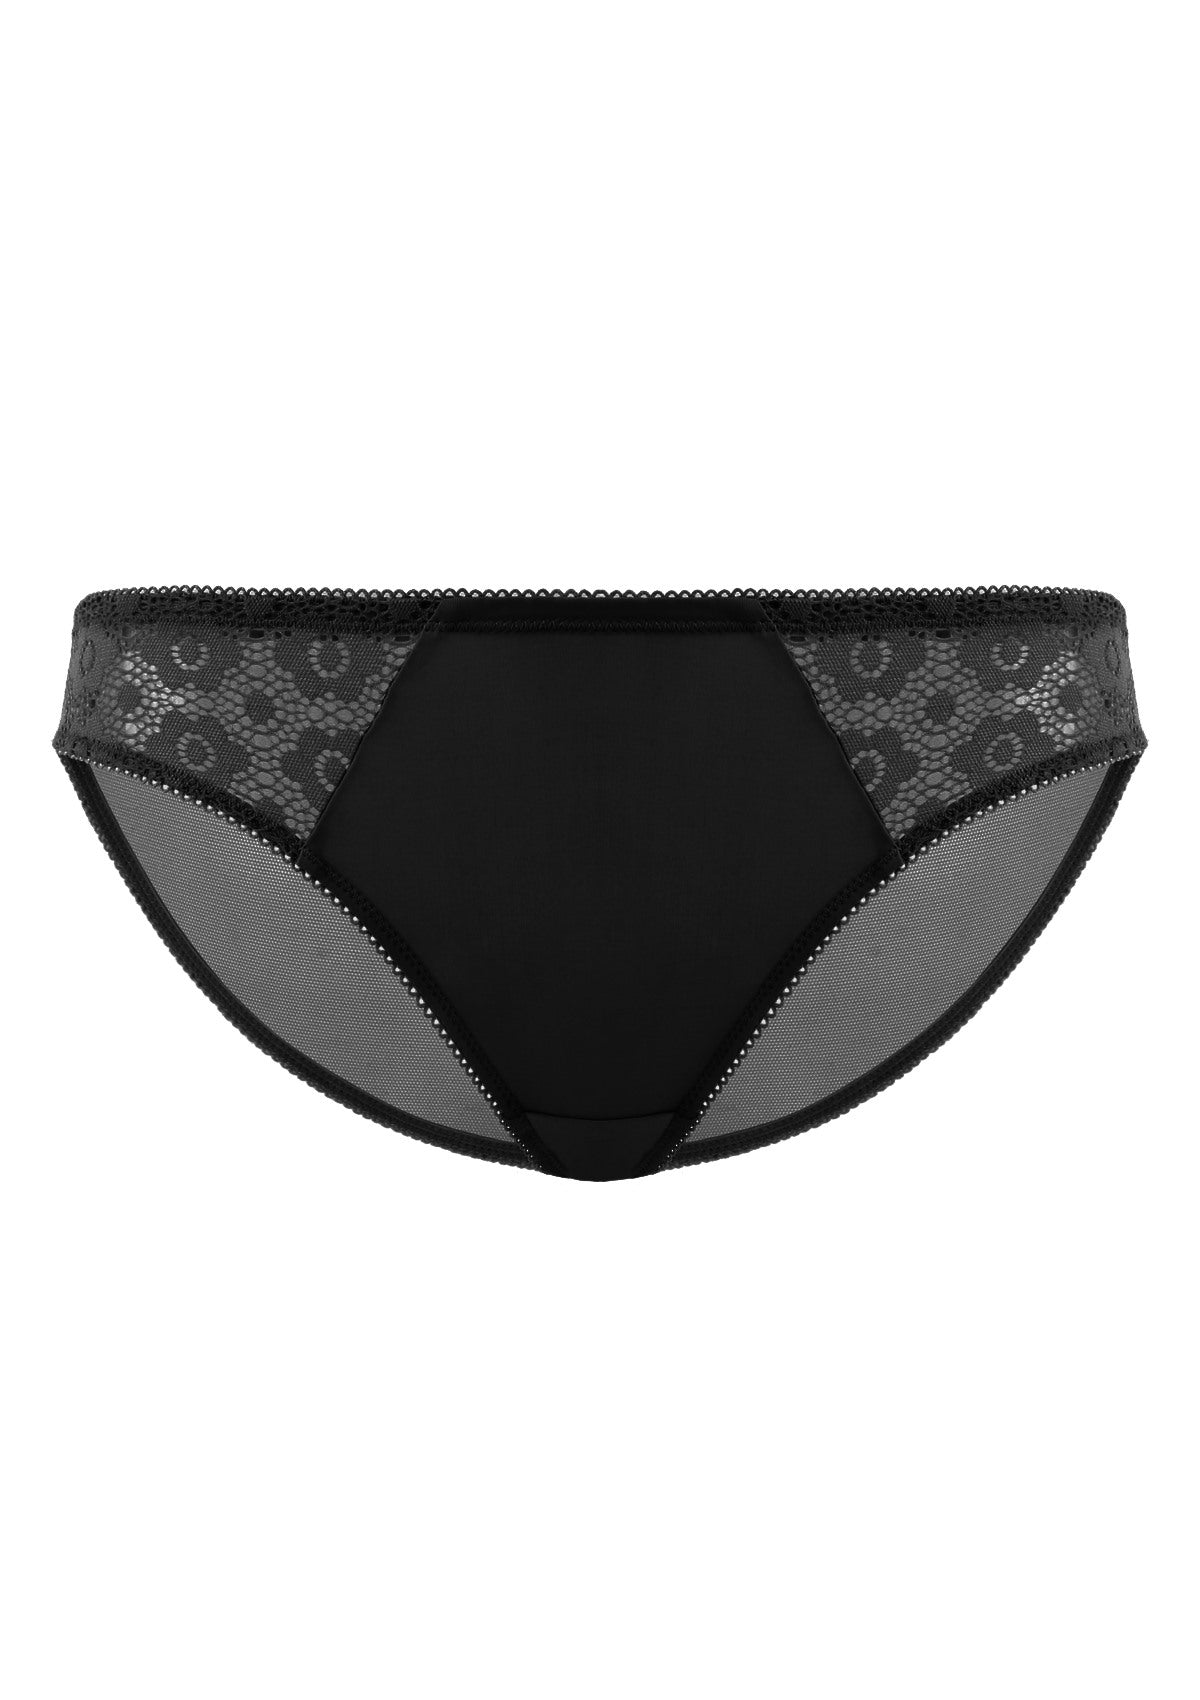 HSIA Serena Comfortable Trendy Lace Trim Bikini Underwear - L / Champagne